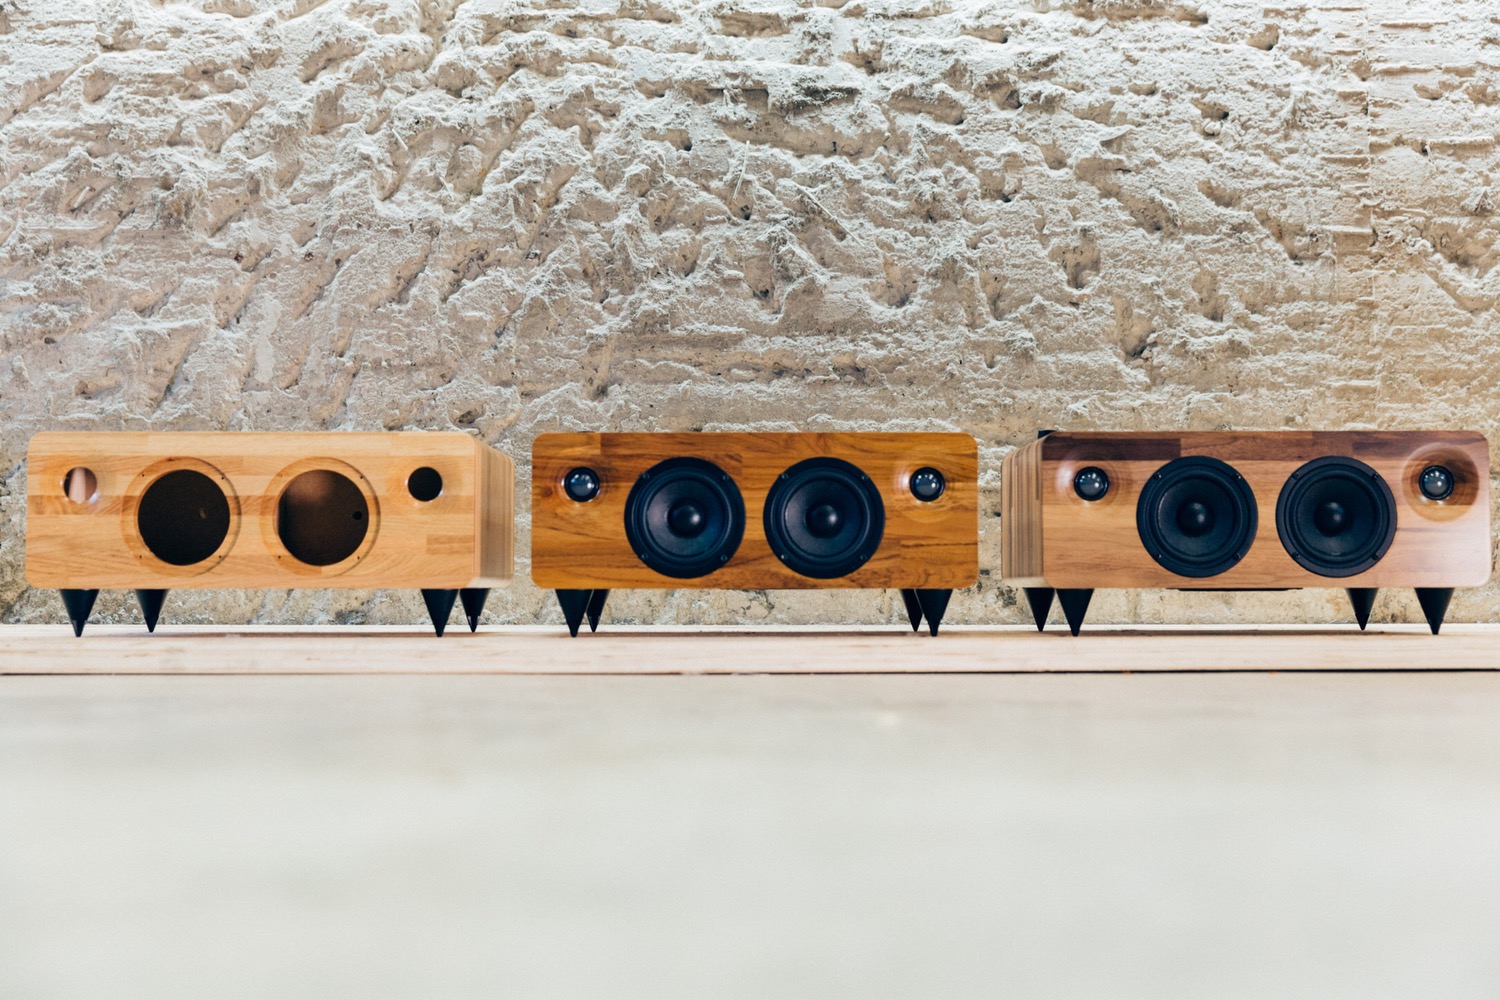 min7 handmade wooden speaker kickstarter minfort 2